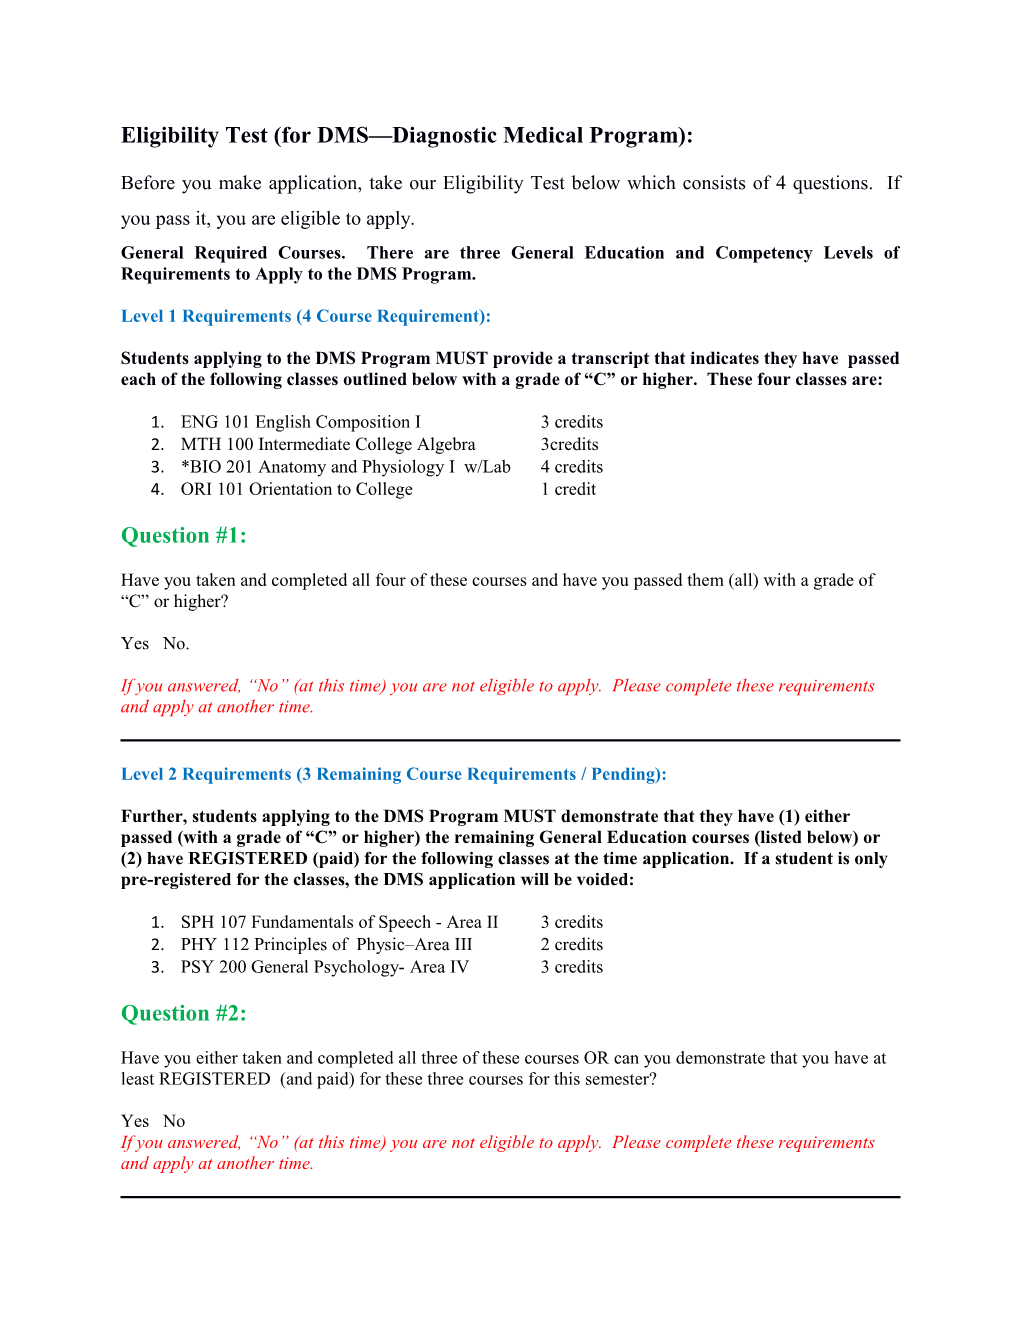 Eligibility Test (For DMS Diagnostic Medical Program)